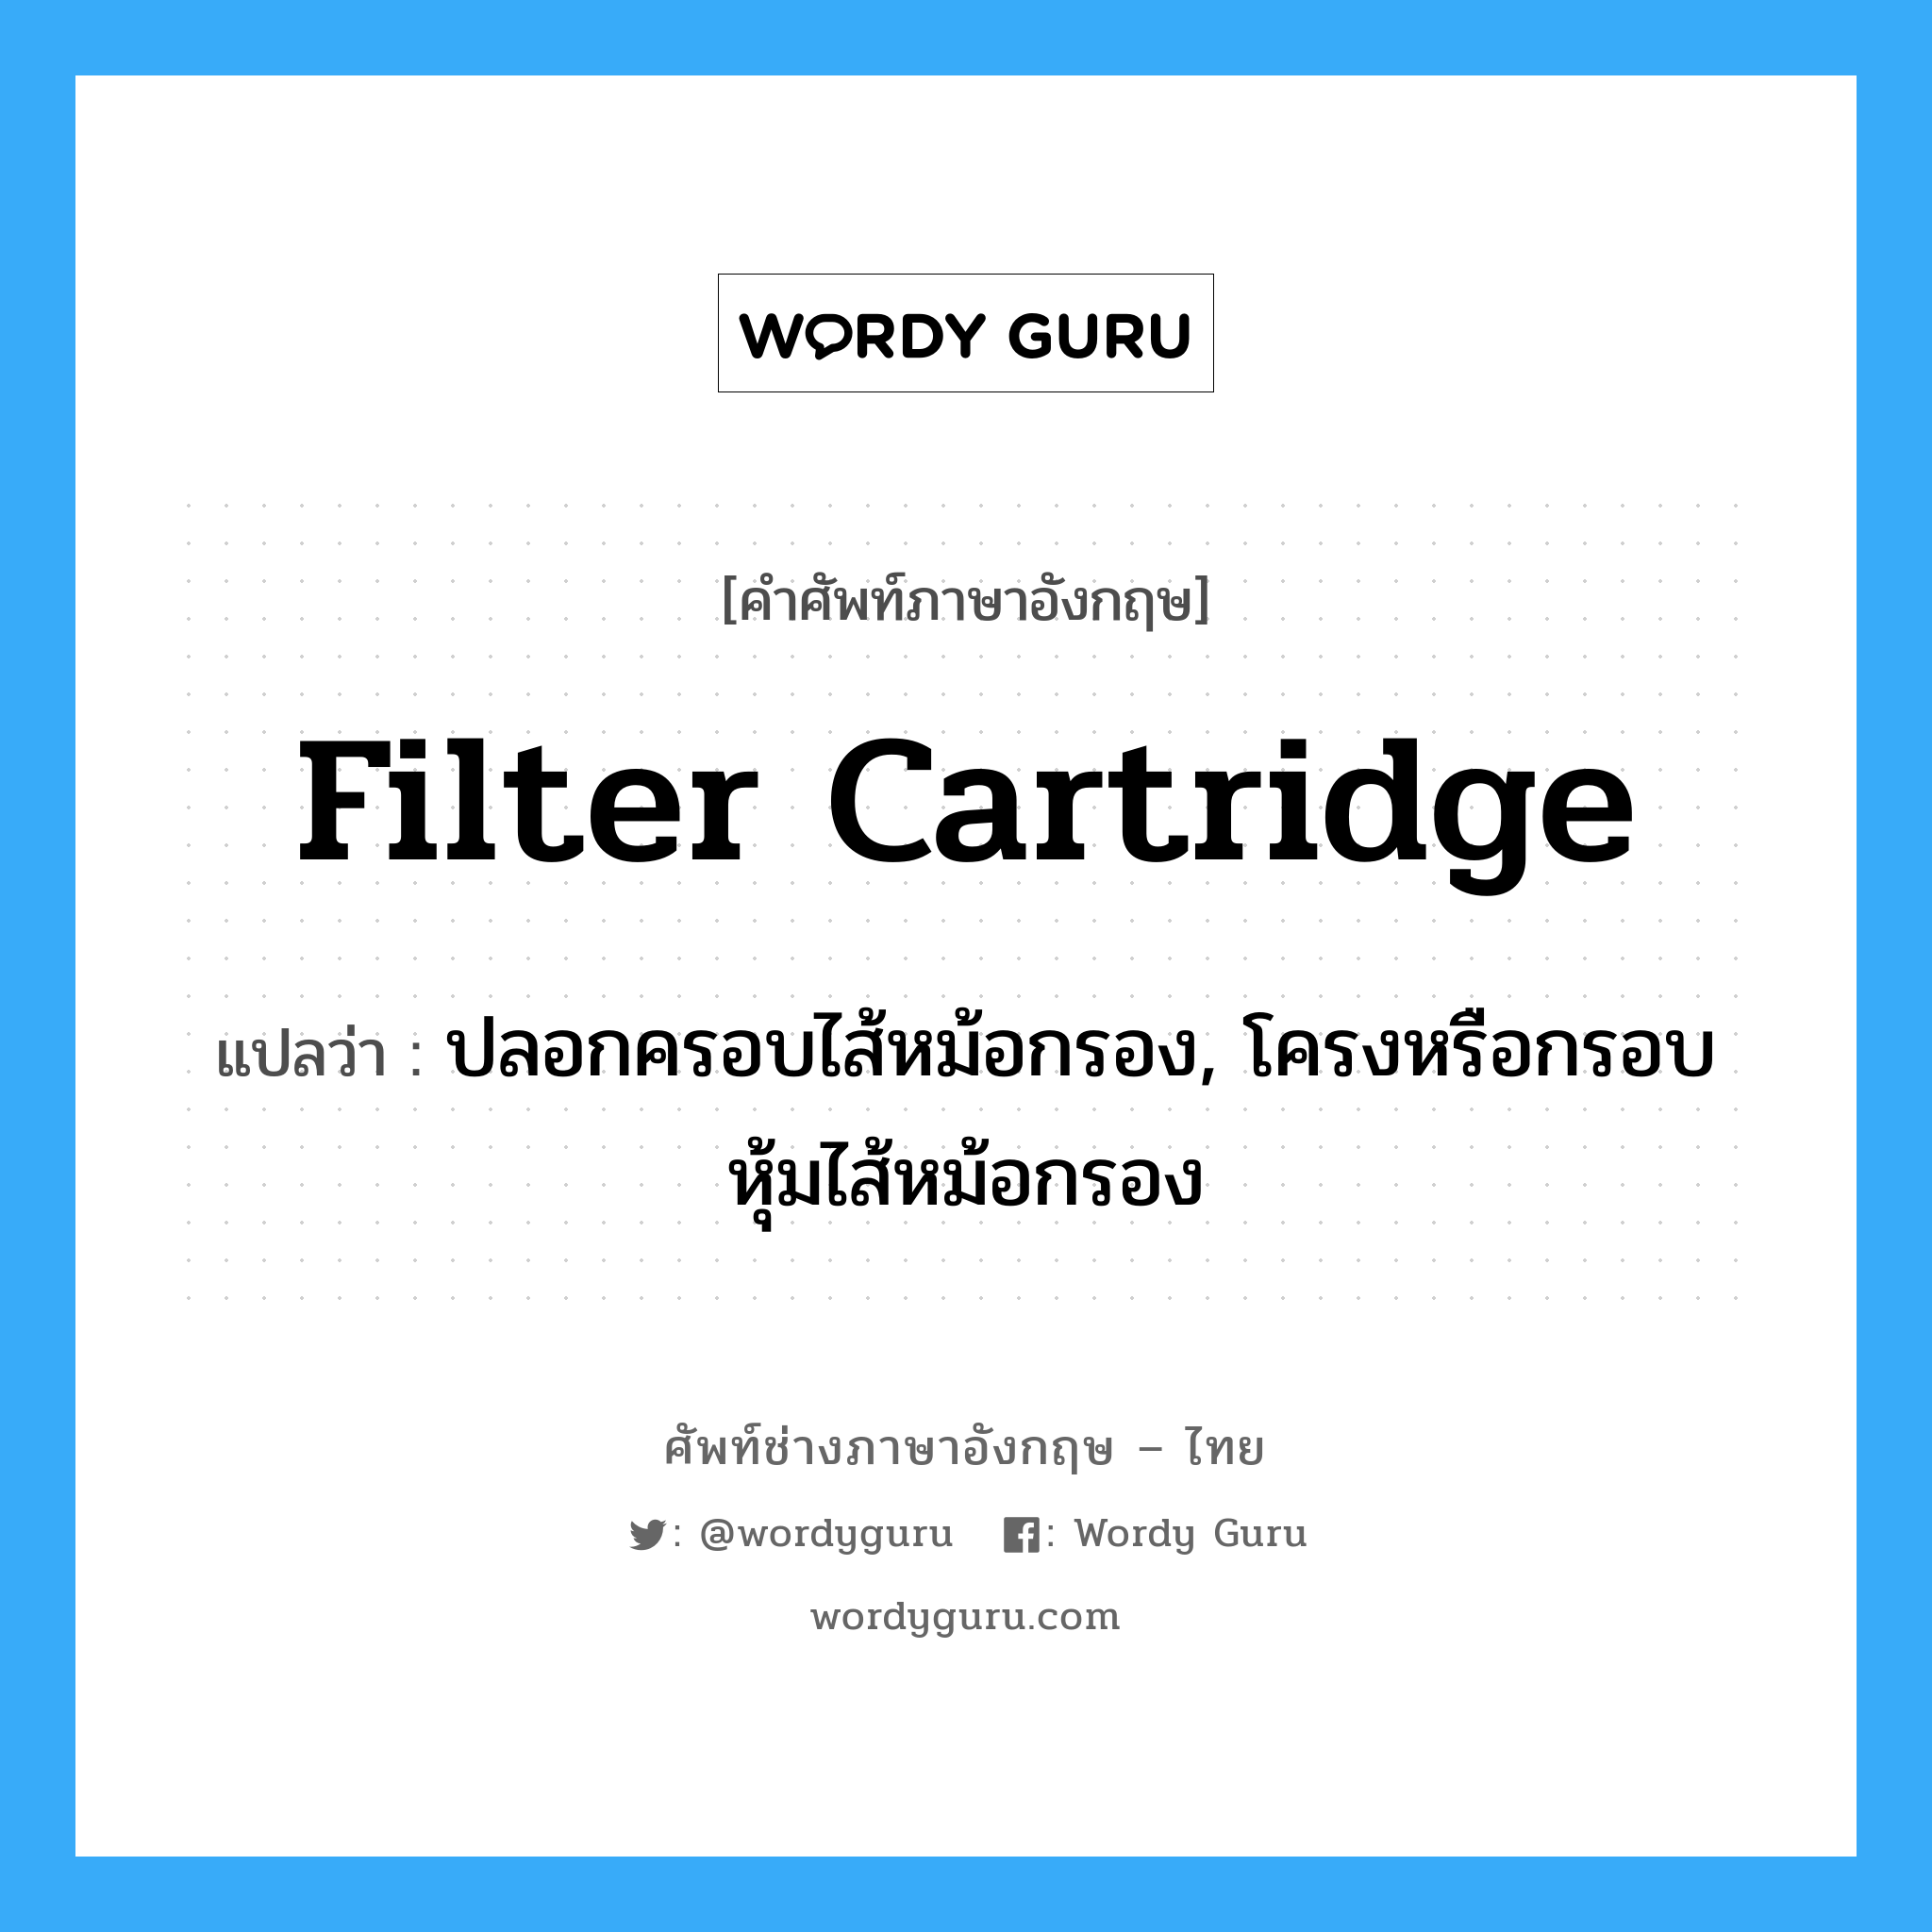 filter cartridge แปลว่า?, คำศัพท์ช่างภาษาอังกฤษ - ไทย filter cartridge คำศัพท์ภาษาอังกฤษ filter cartridge แปลว่า ปลอกครอบไส้หม้อกรอง, โครงหรือกรอบหุ้มไส้หม้อกรอง